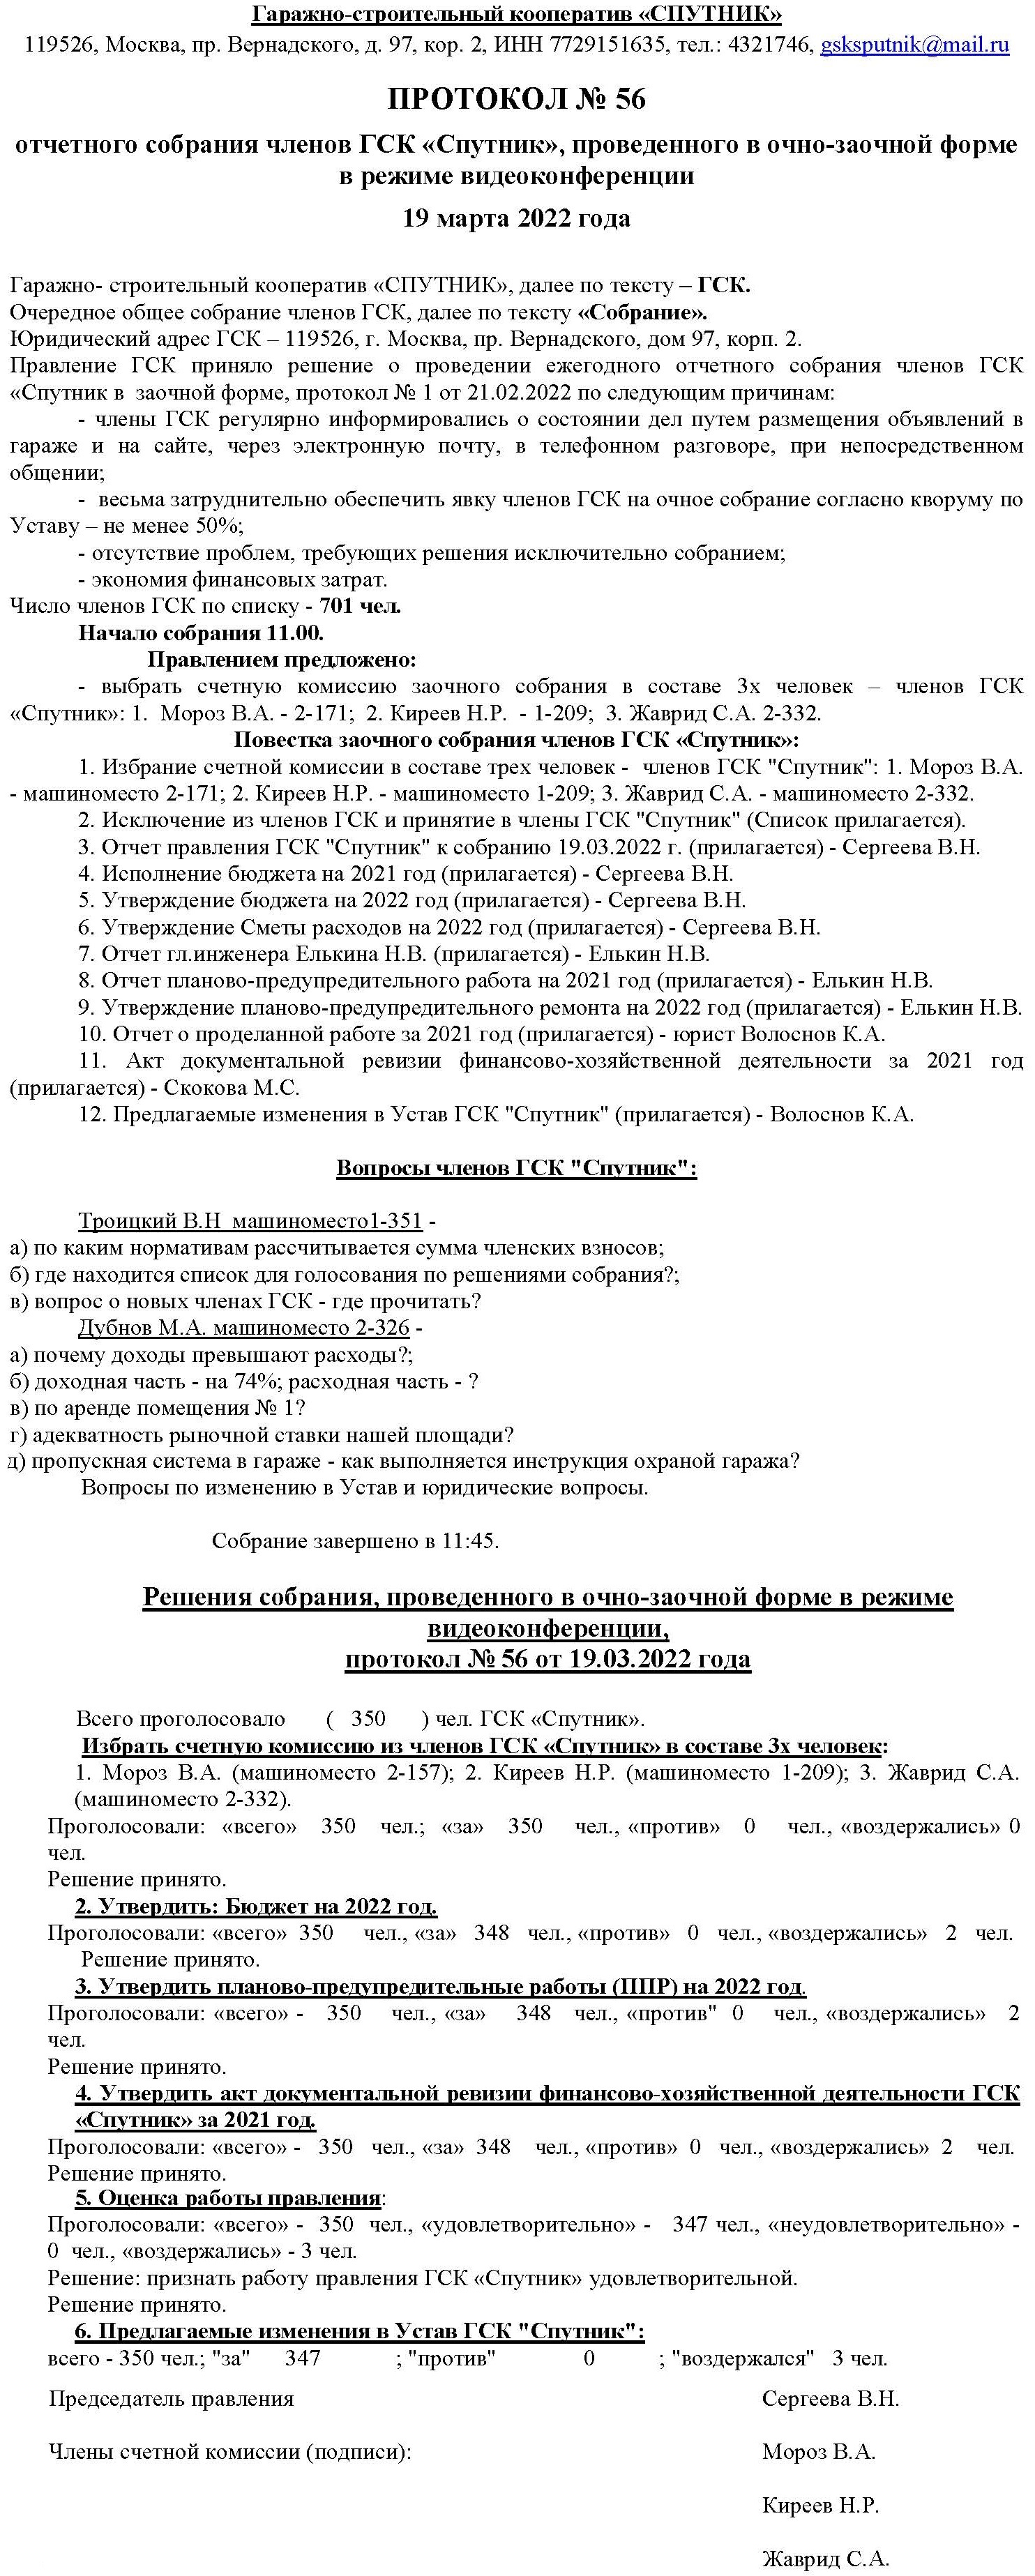 Отчётное собрание ГСК «Спутник» 19.03.2023 г.